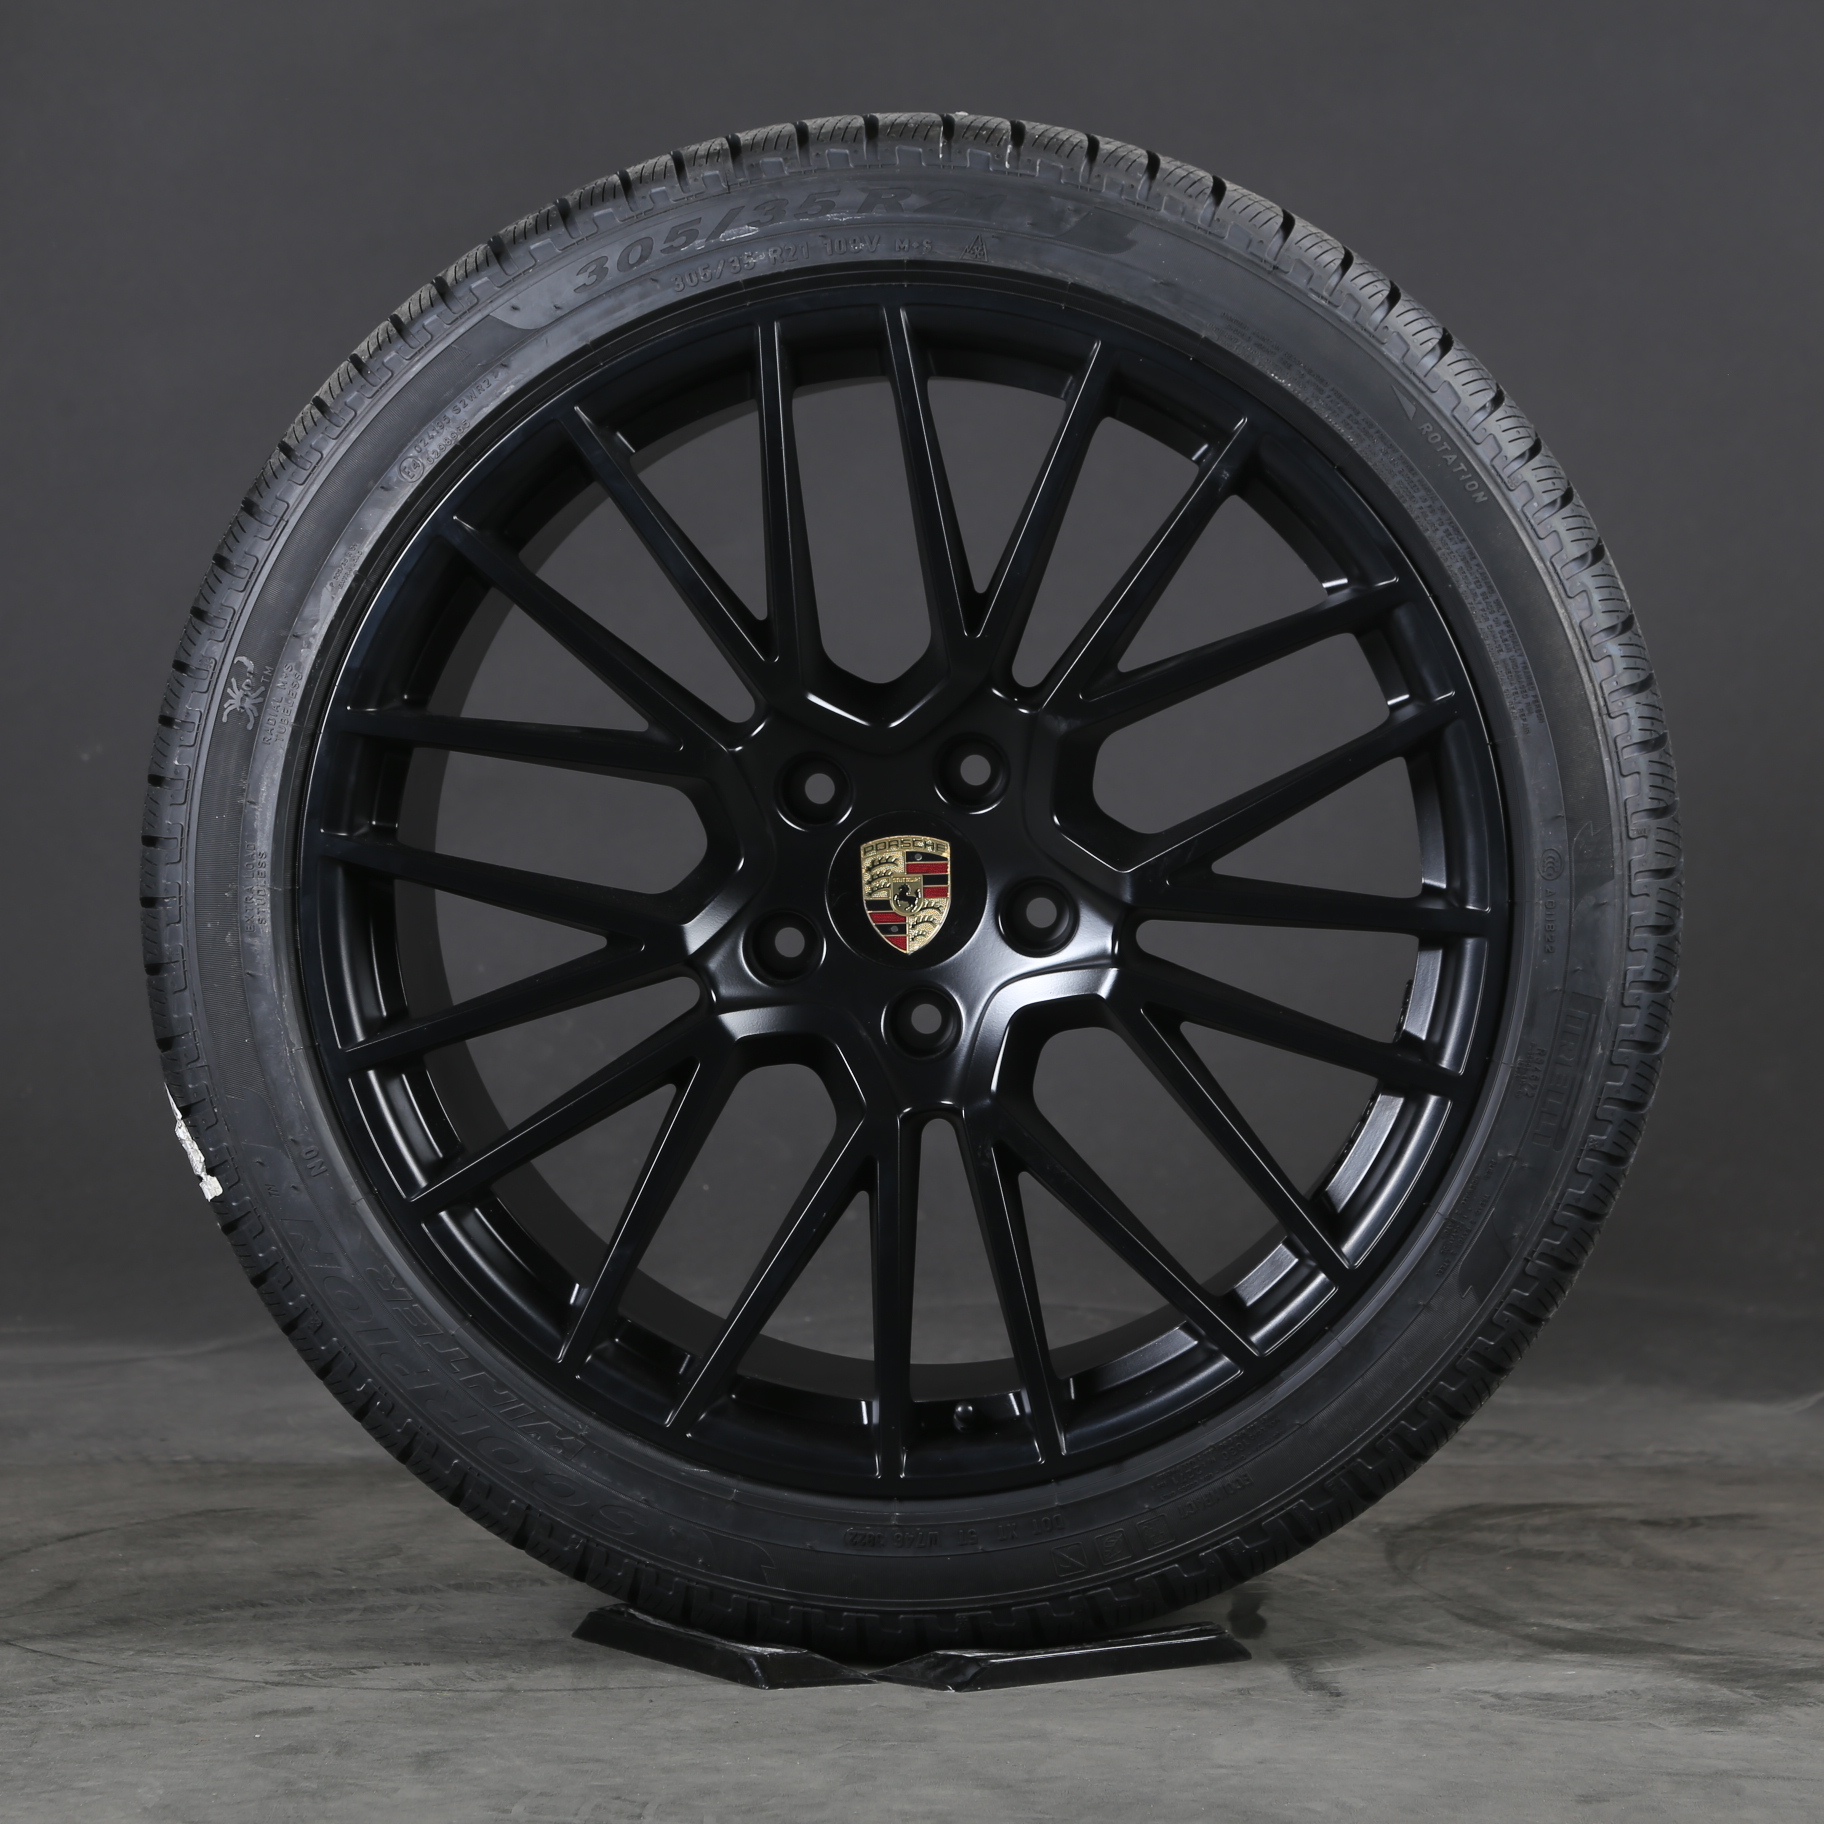 21 inch Spyder Porsche RS wheels 9 E3 Winter Cayenne 9Y